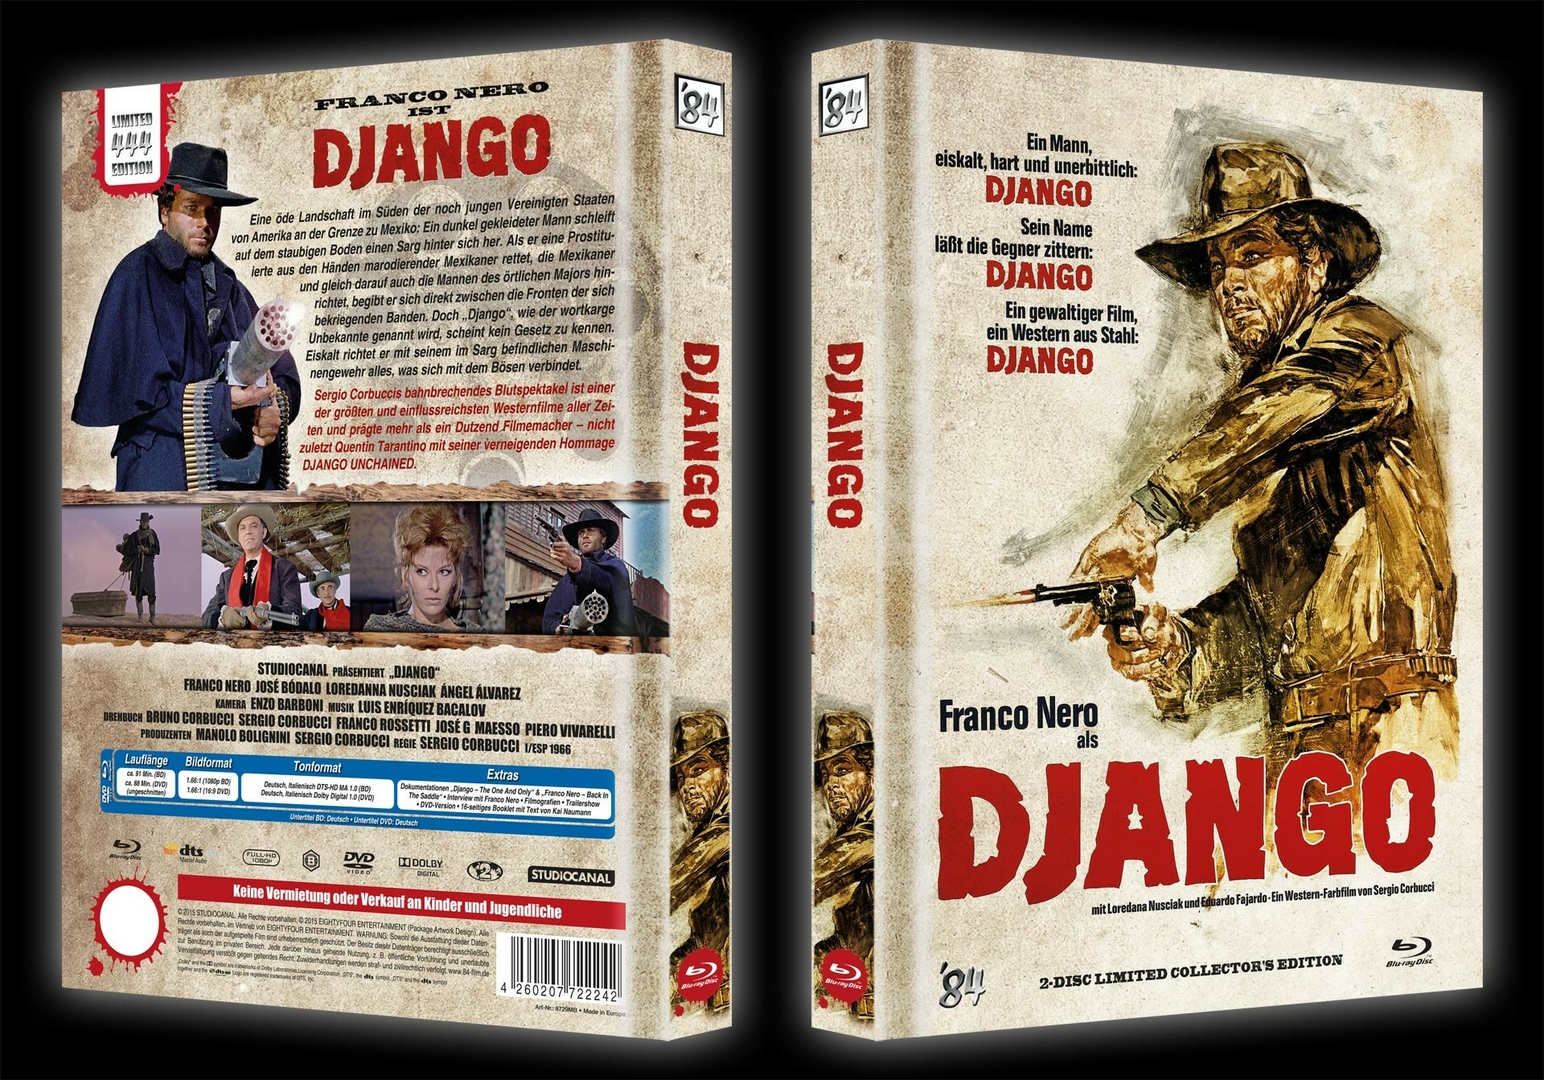 django-mediabook-cover-b-komplett.jpg